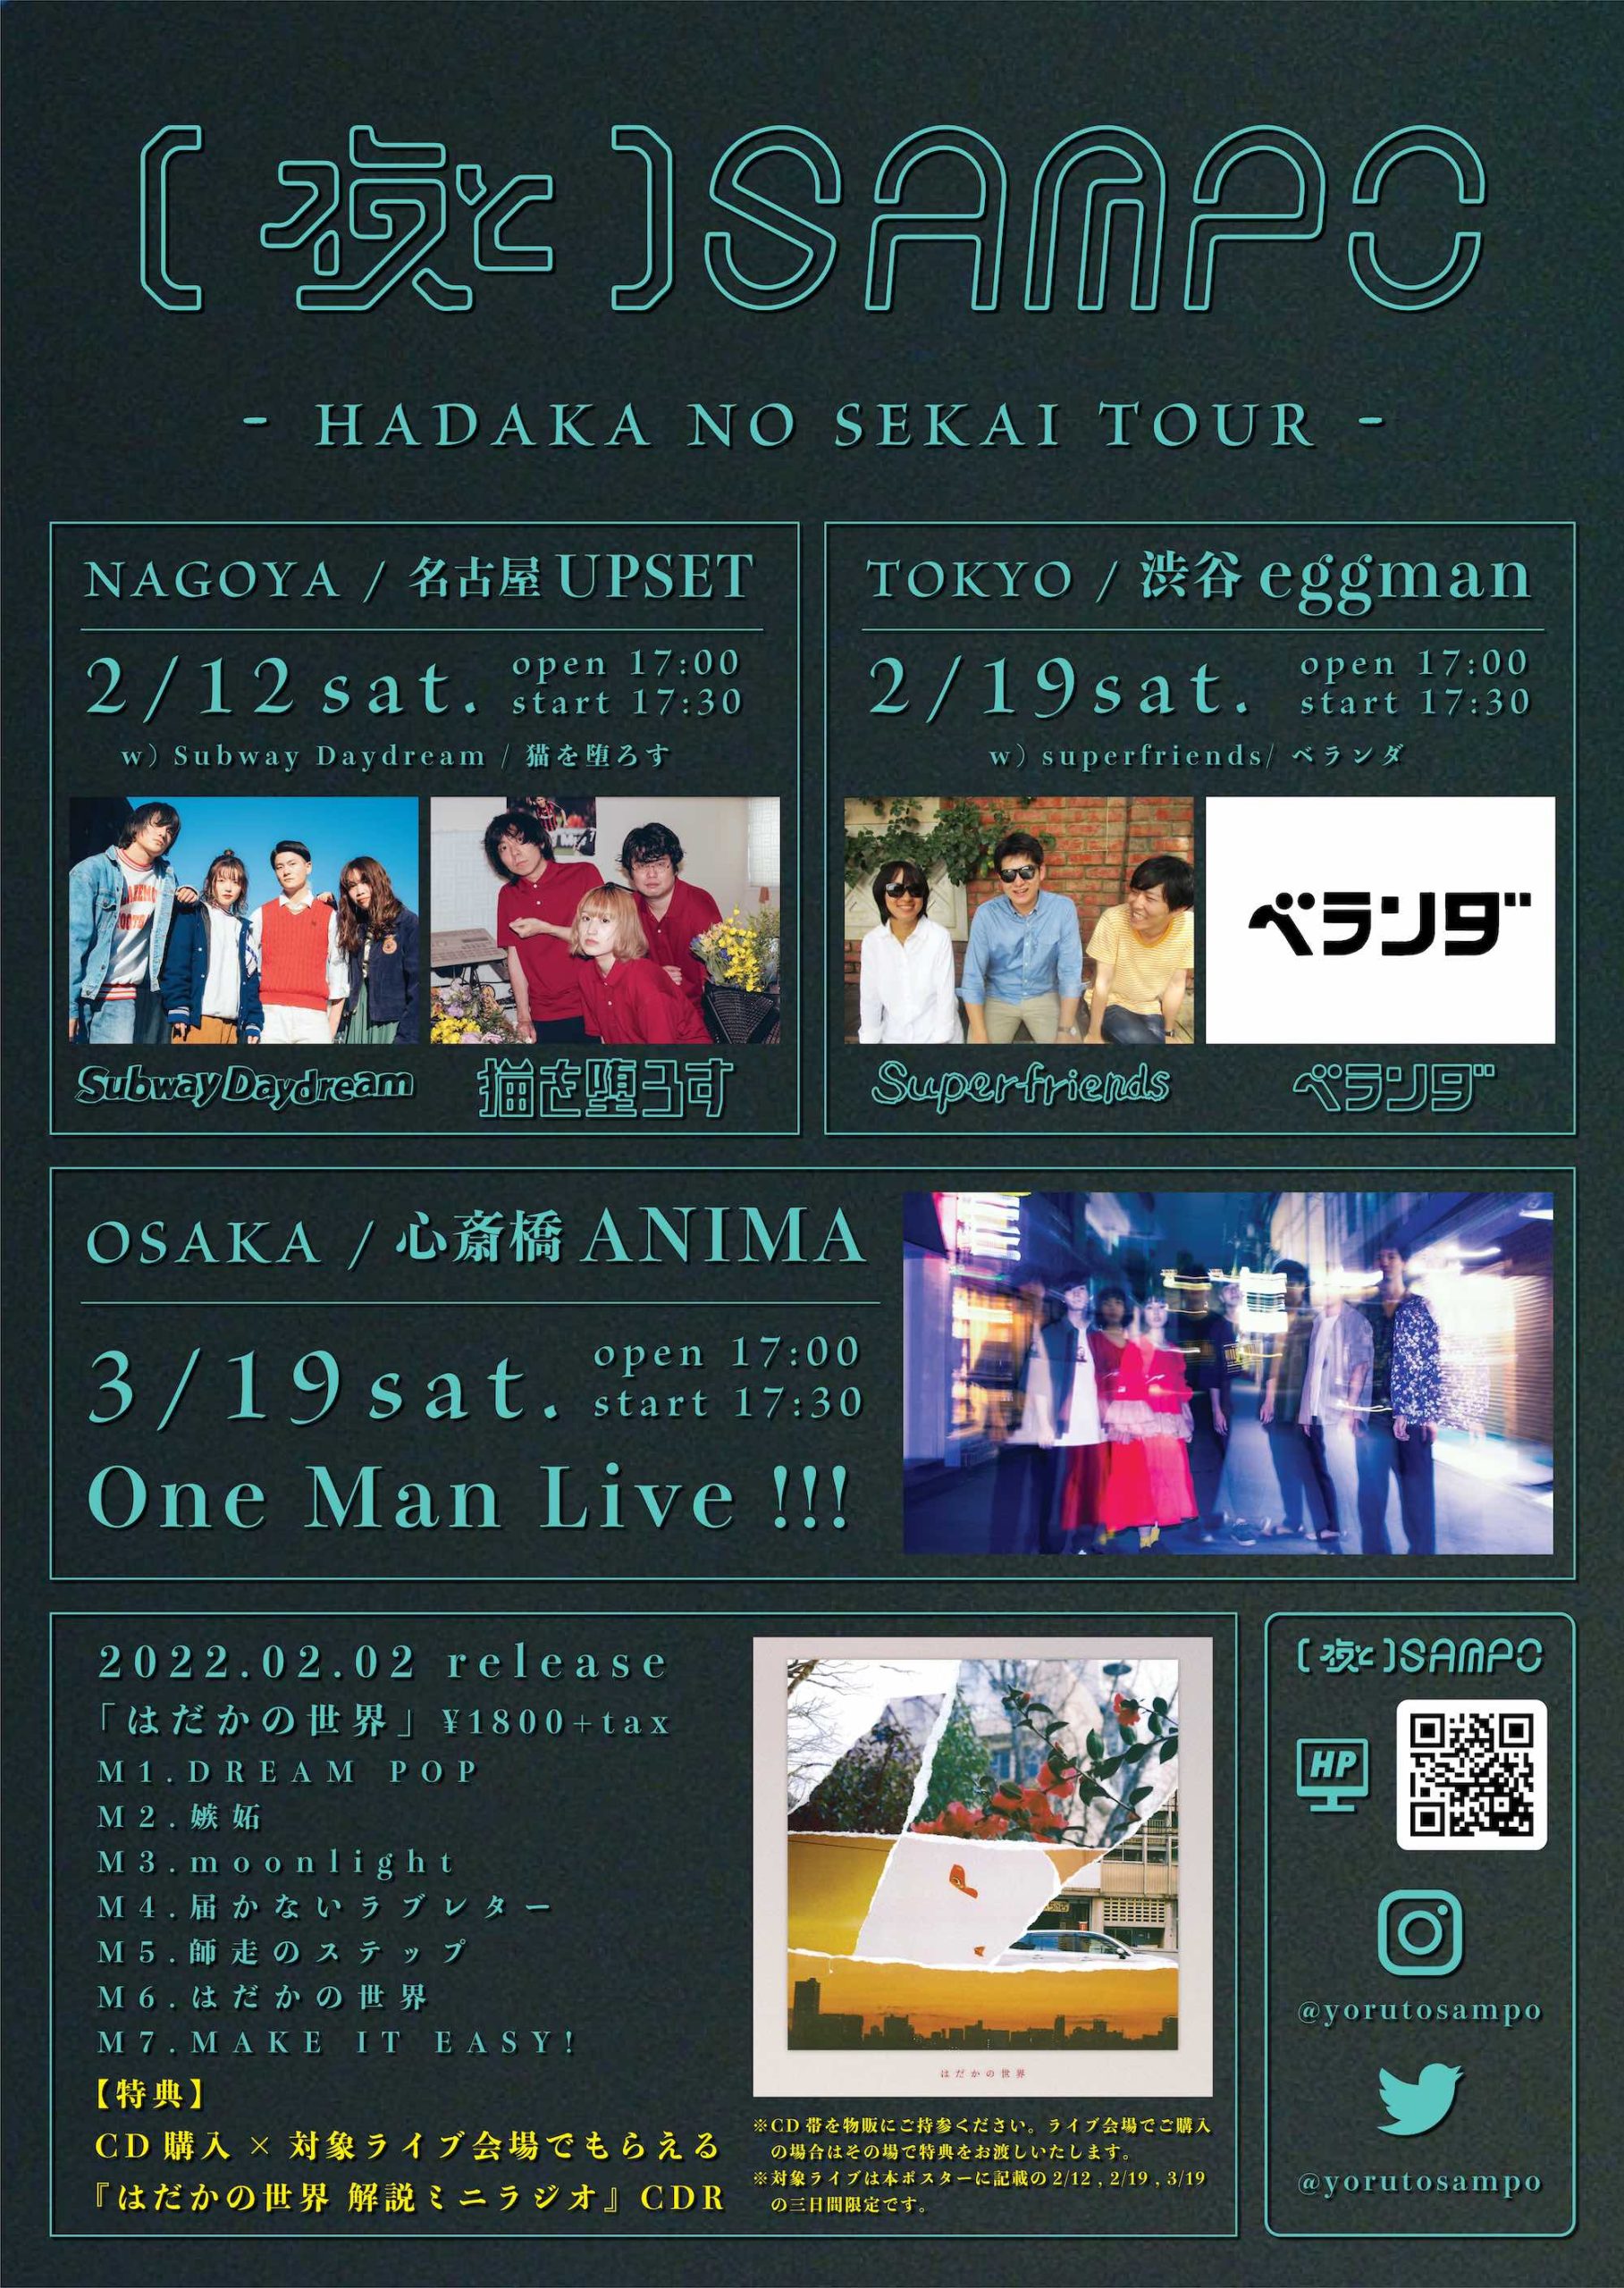 HADAKA NO SEKAI TOUR